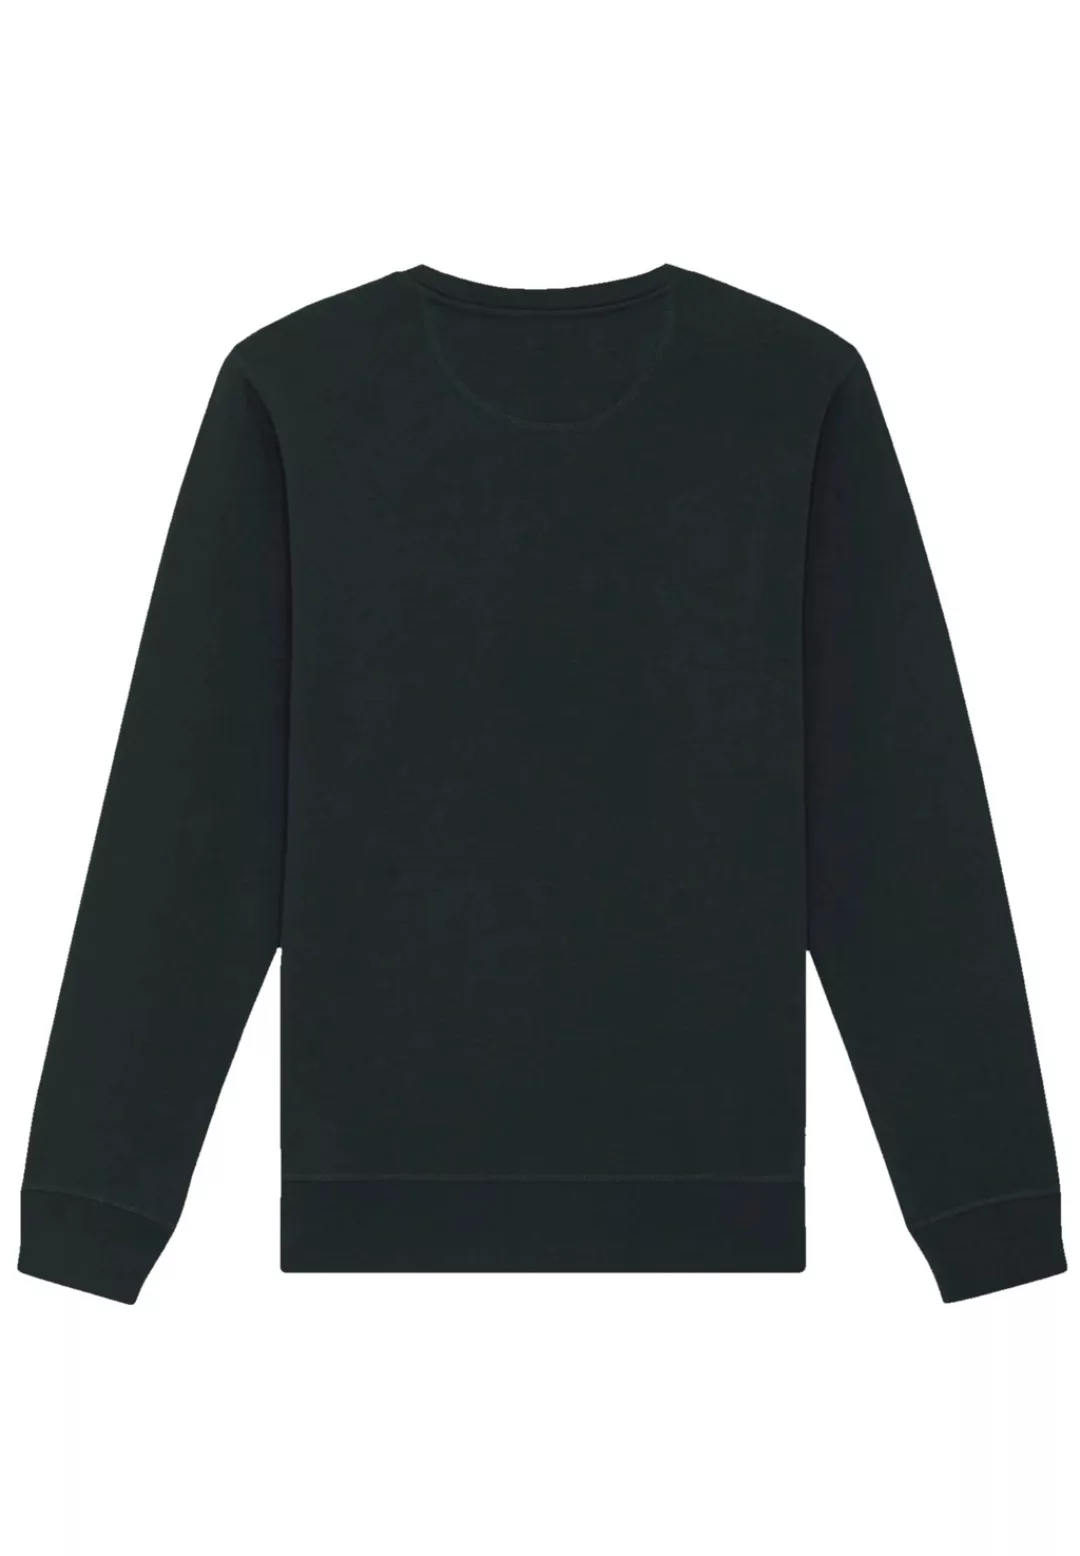 F4NT4STIC Sweatshirt "North Anchor Knut & Jan Hamburg" günstig online kaufen